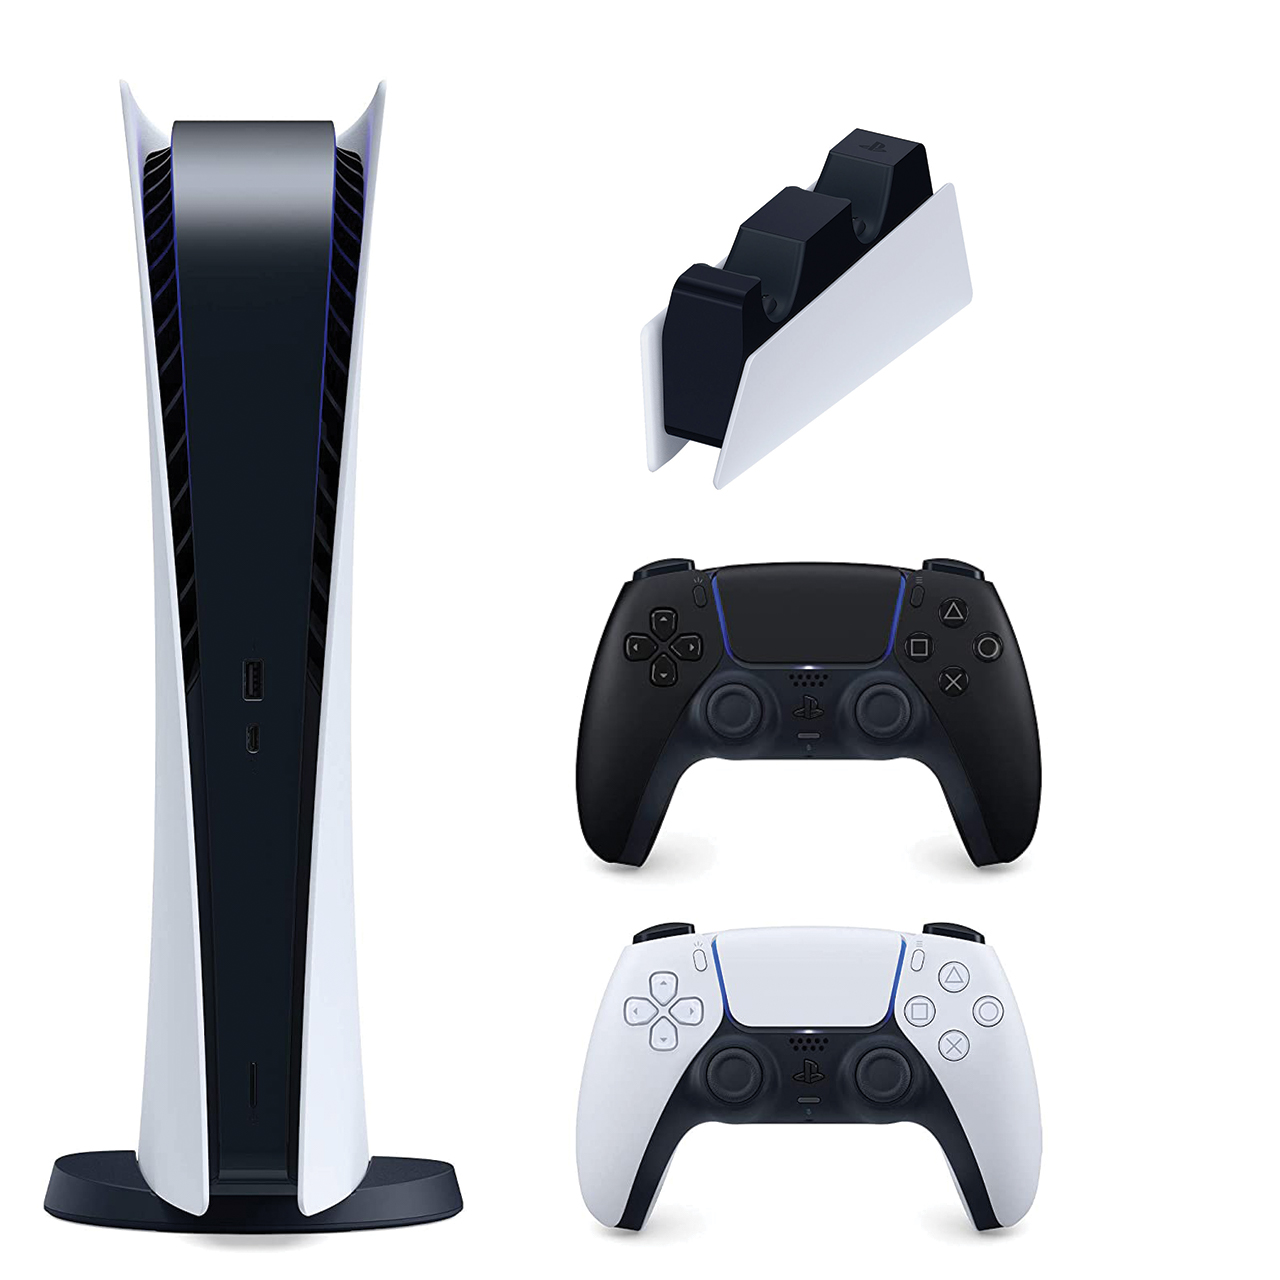 مجموعه کنسول بازی سونی مدل PlayStation 5 Digital ظرفیت 825 گیگابایت به دسته اضافی و پایه شارژر